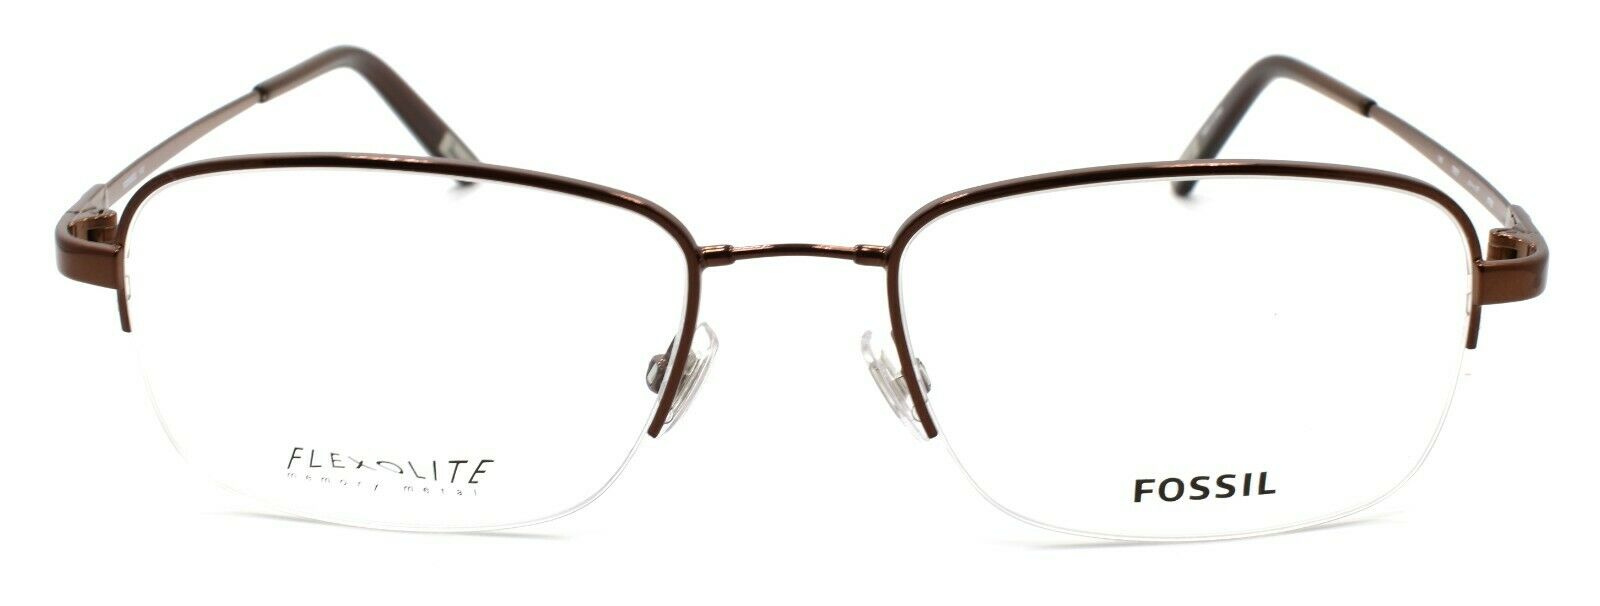 2-Fossil Trey 0TR2 Men's Eyeglasses Frames Half-rim Flexible 54-19-145 Dark Brown-780073973332-IKSpecs